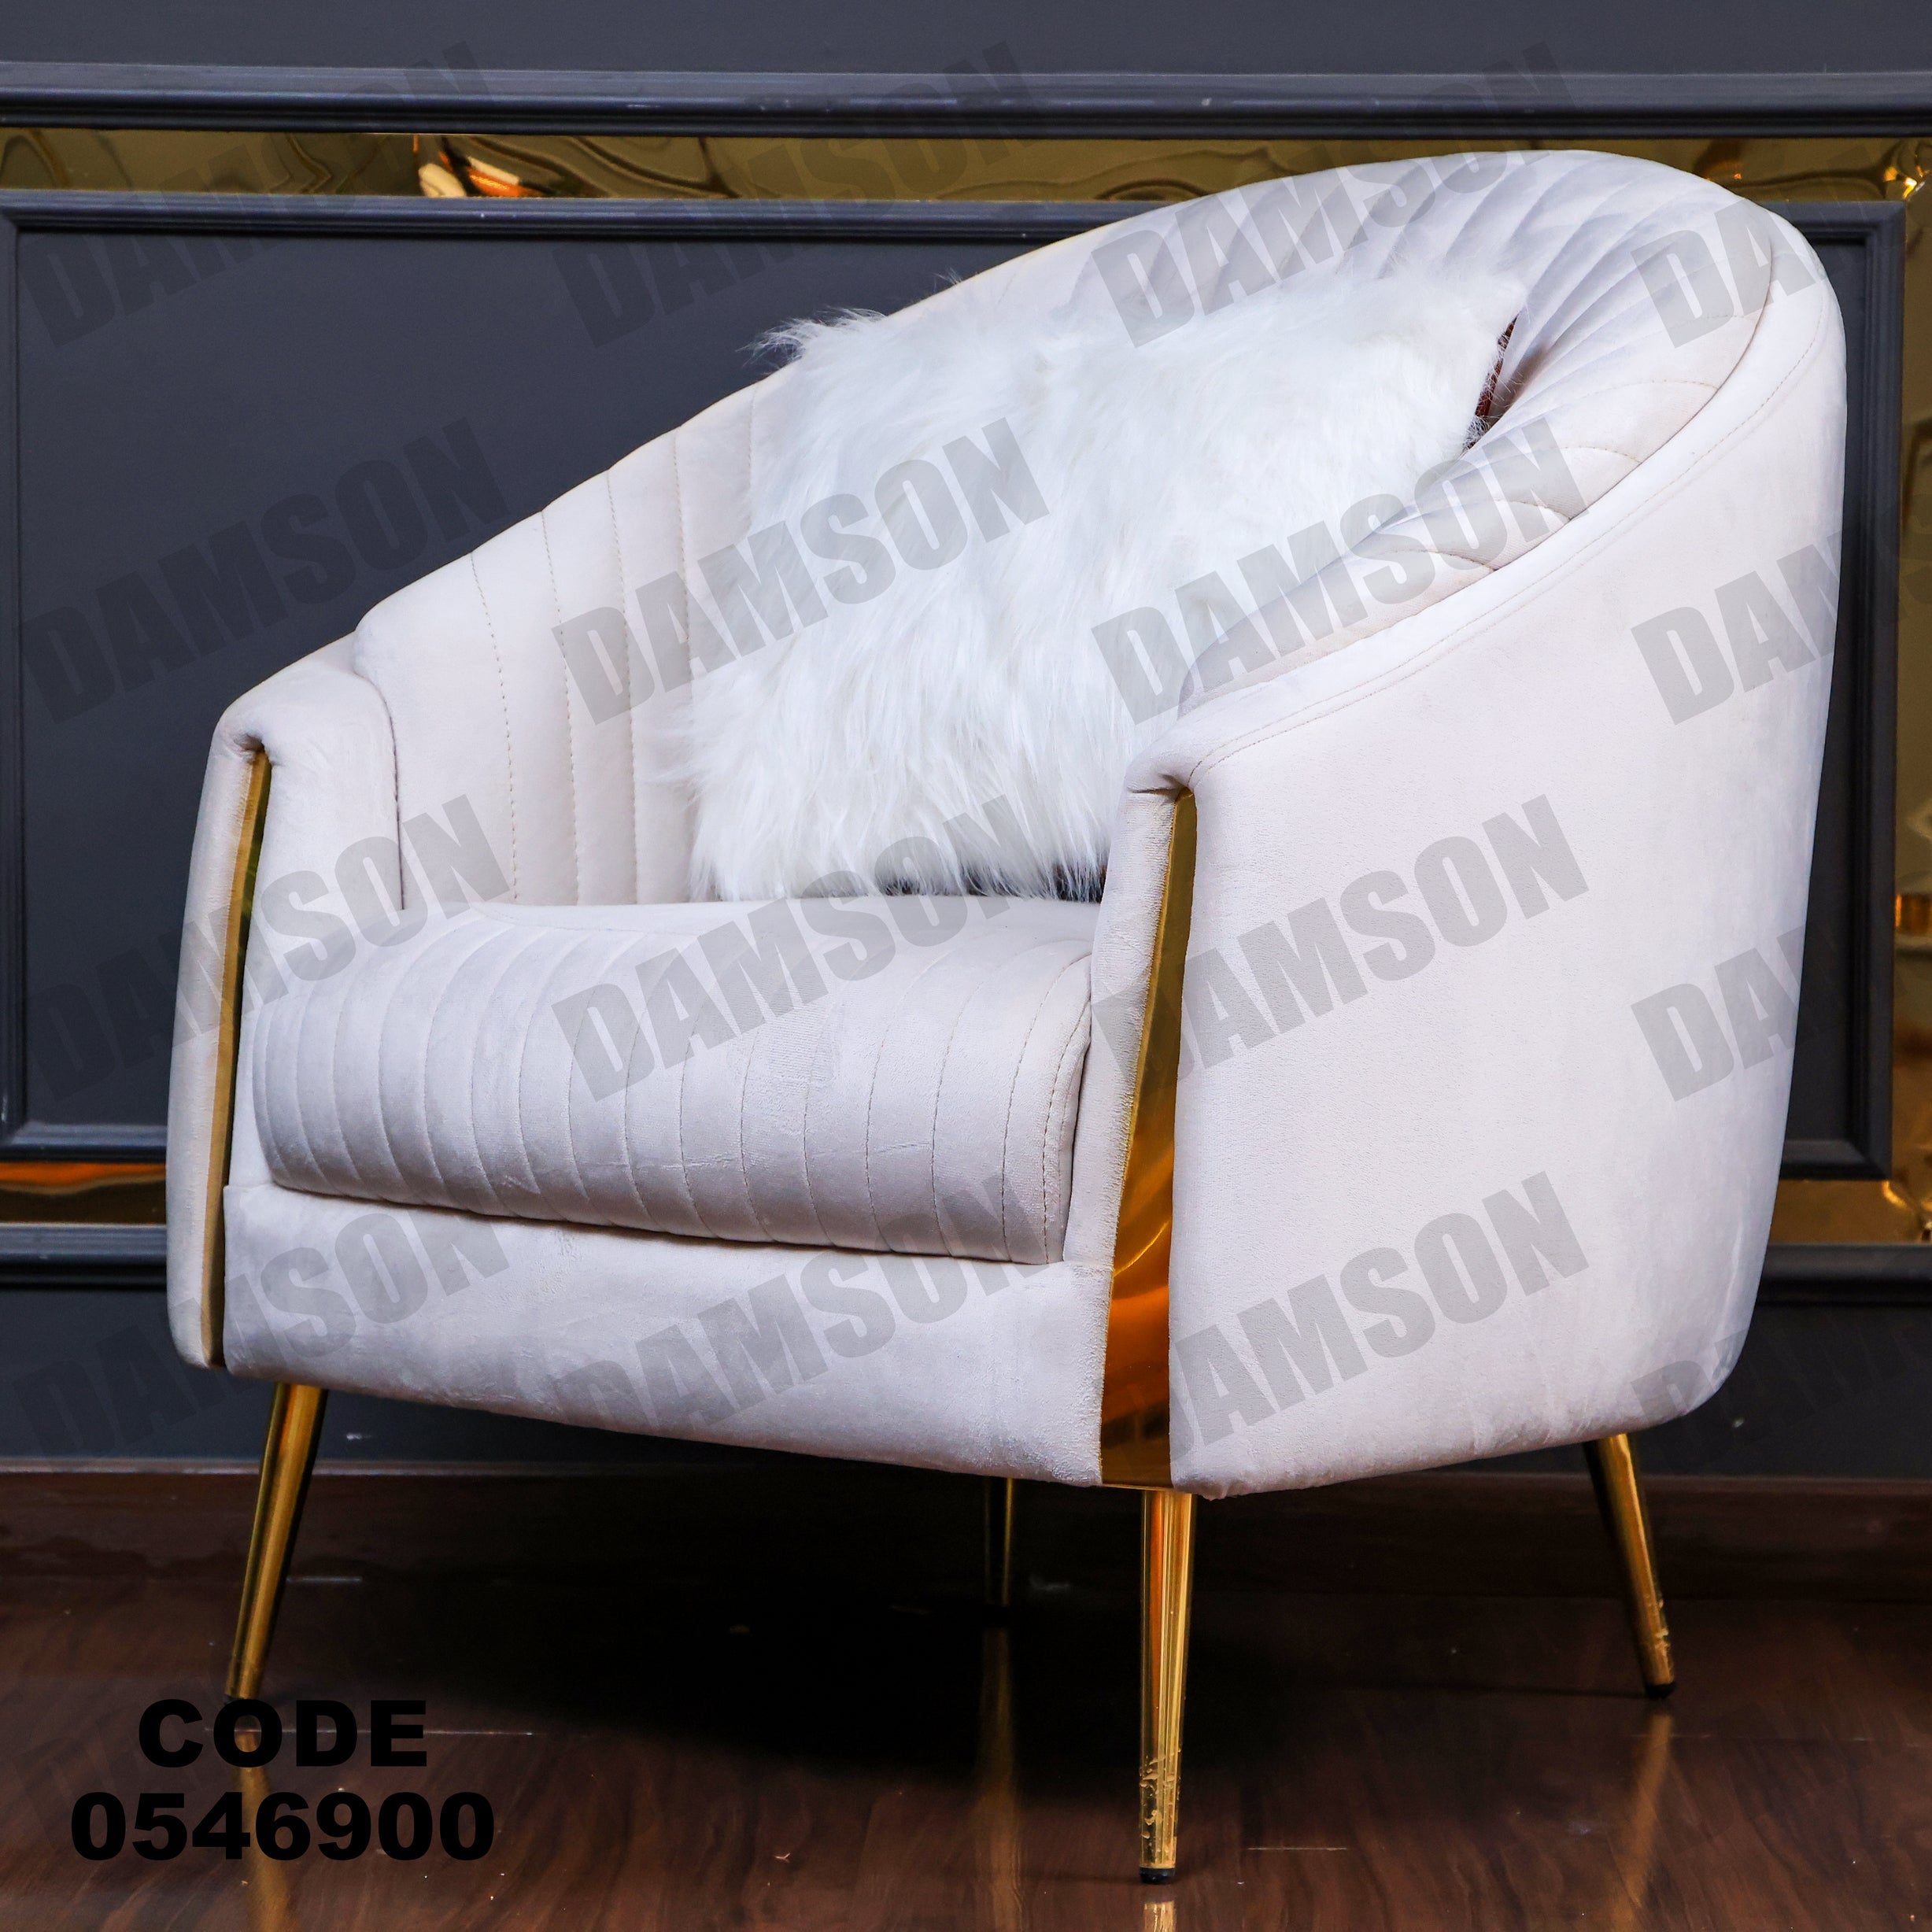 فوتية 2-469 - Damson Furnitureفوتية 2-469